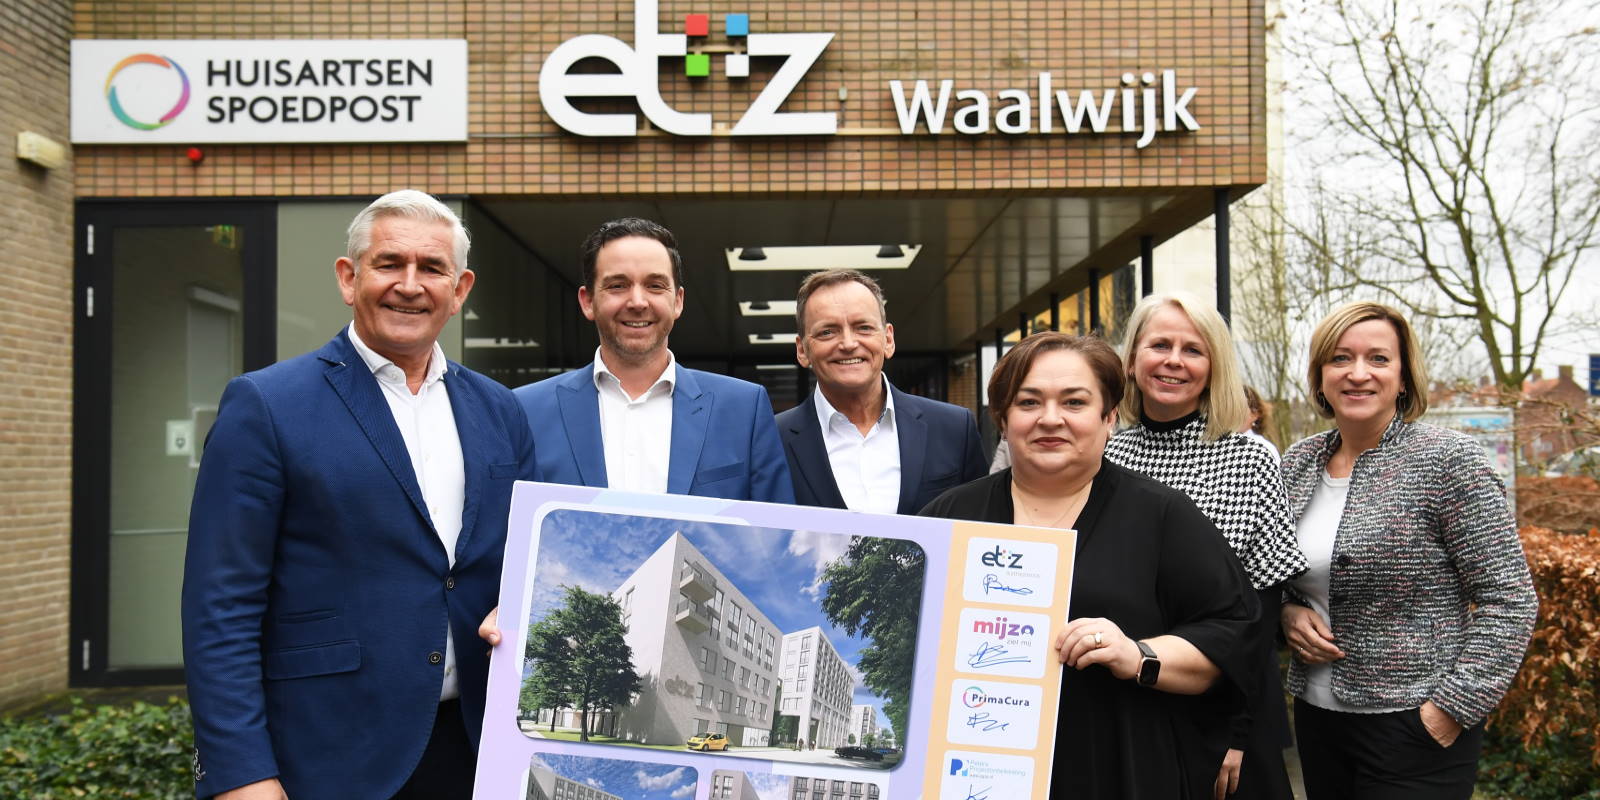 Ondertekening huurcontract ETZ, Mijzo en Primacura in Waalwijk. Foto: Pix4Profs / Jan Stads